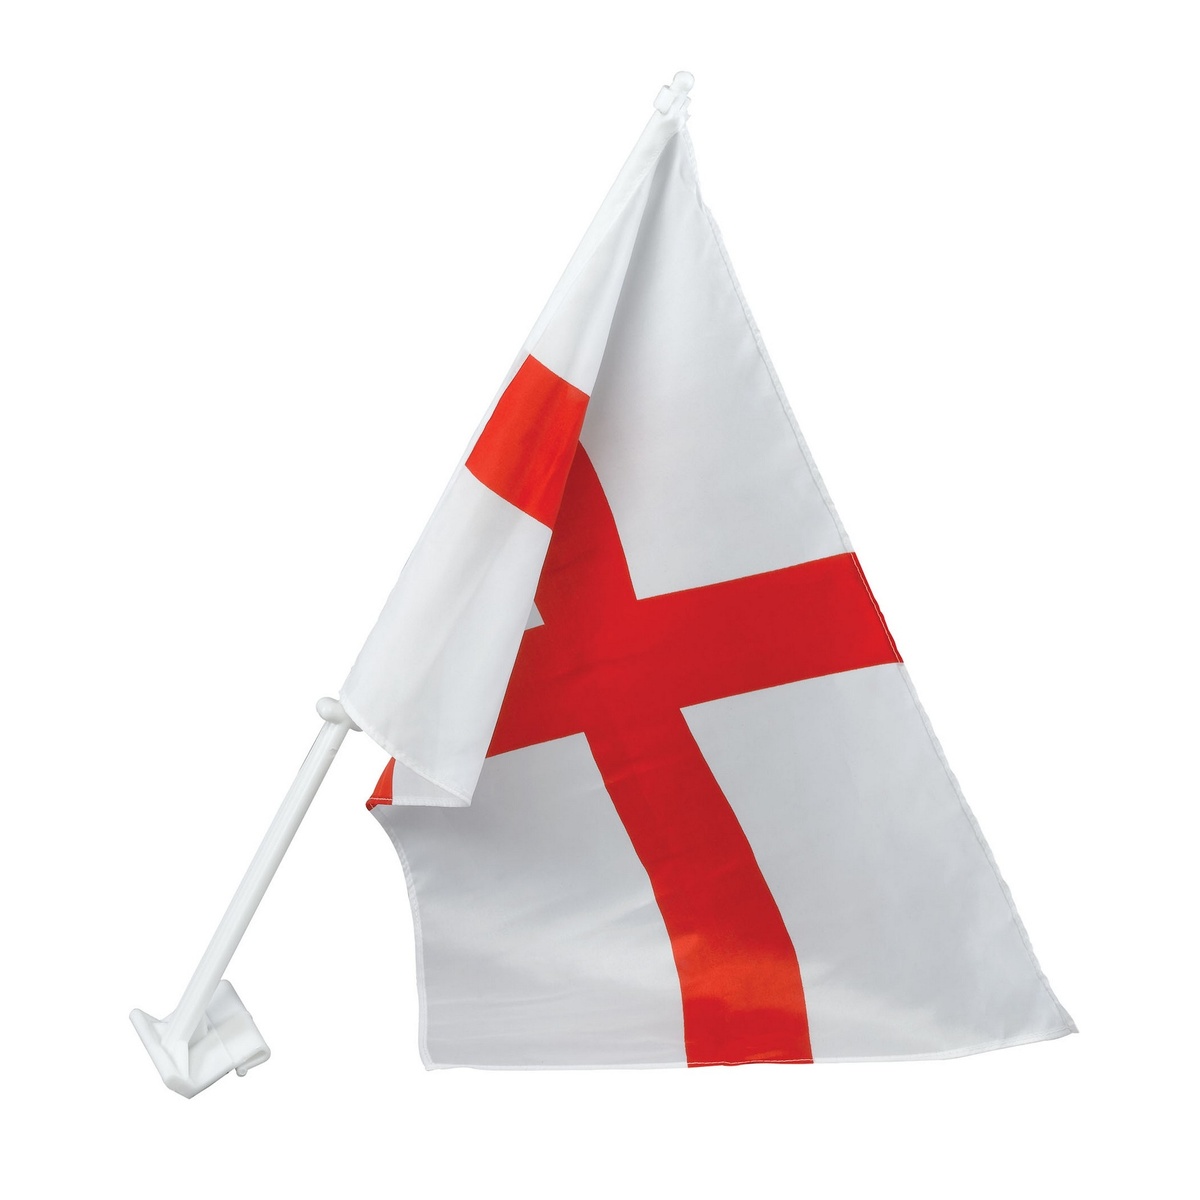 ブリストル・ノベルティー) Bristol Novelty イングランドの国旗